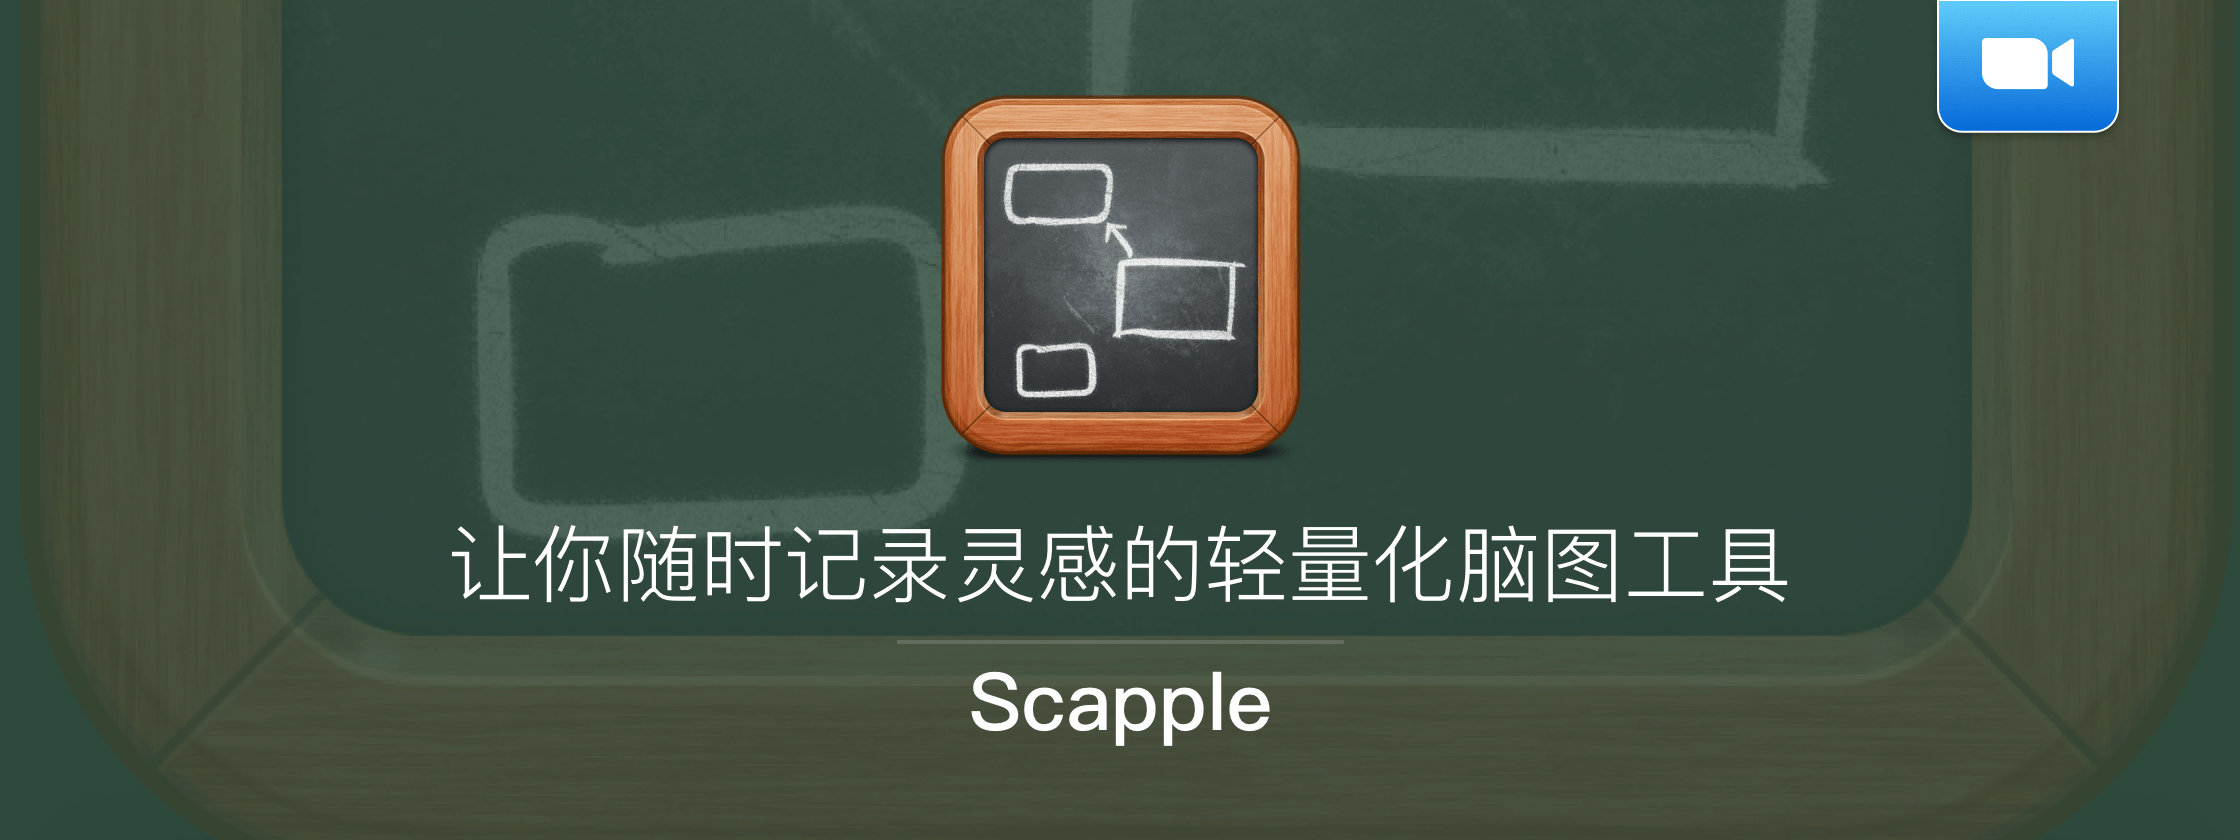 【视频】Scapple，让你随时记录灵感的轻量化脑图工具